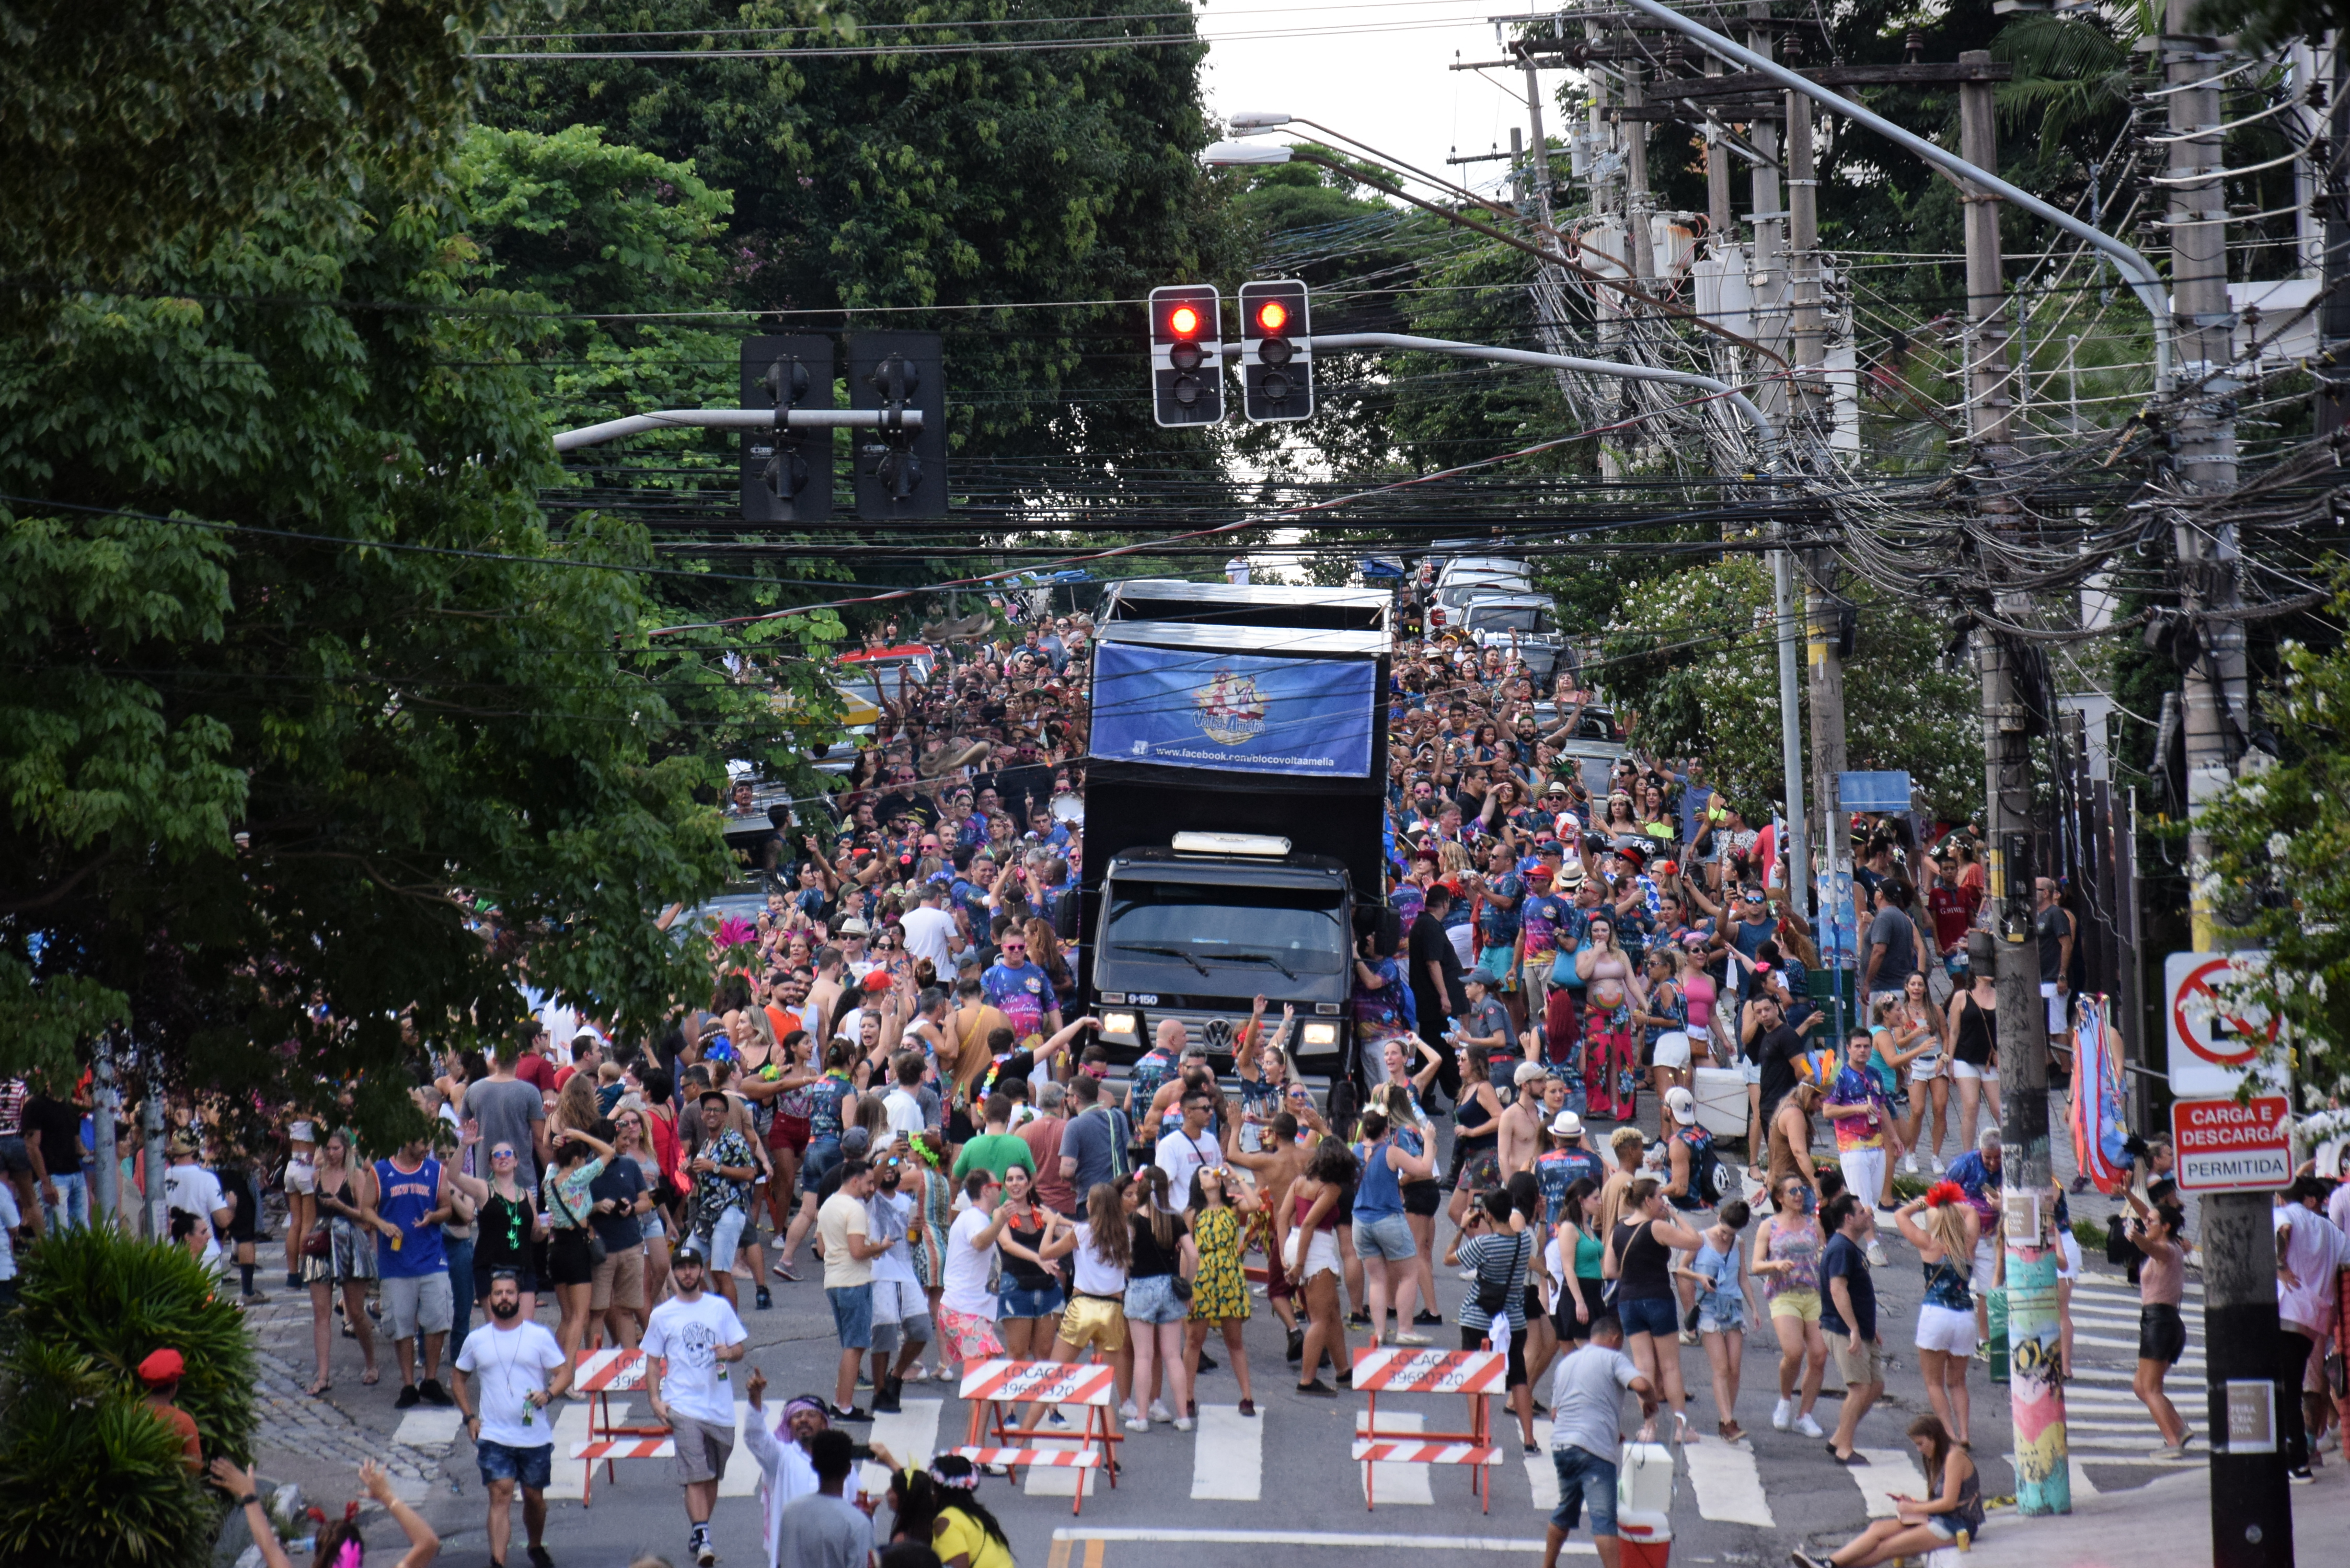 A imagem mostra uma imagem de um trio elétrico desfilando na rua e uma multidão de pessoas ao redor.